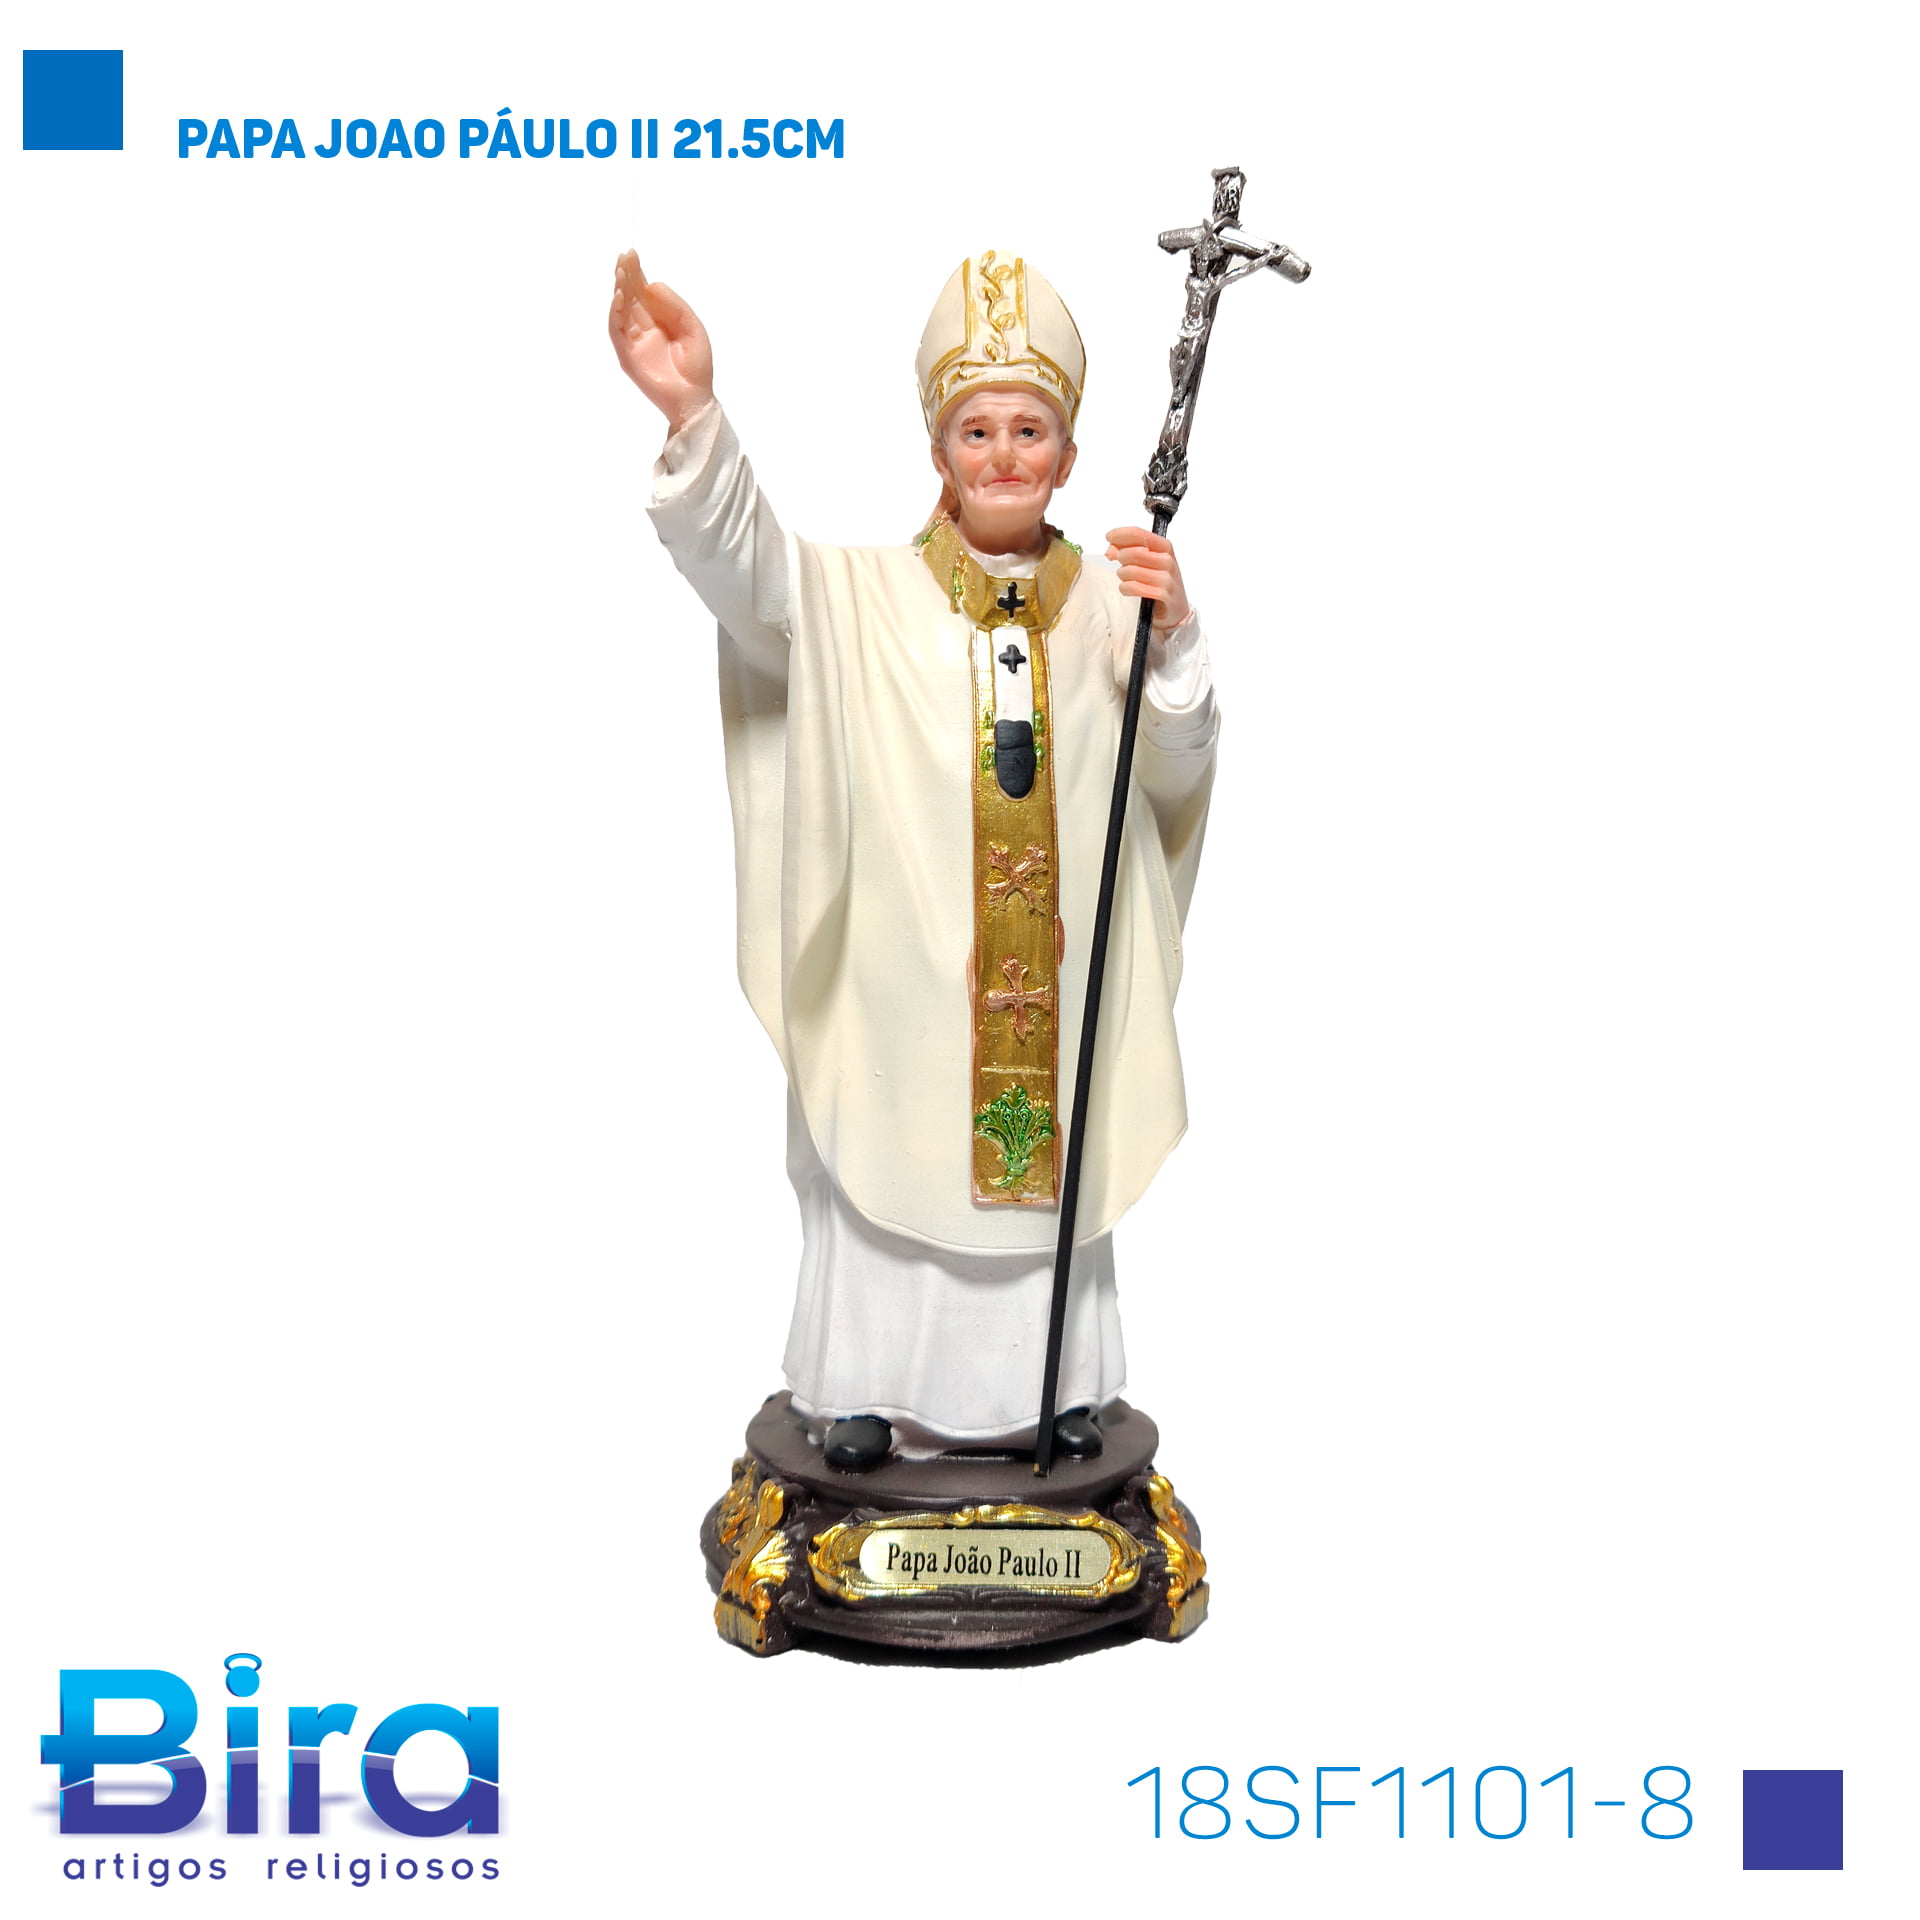 Bira Artigos Religiosos - PAPA JOAO PÁULO II 21.5CM Cód. 18SF1101-8